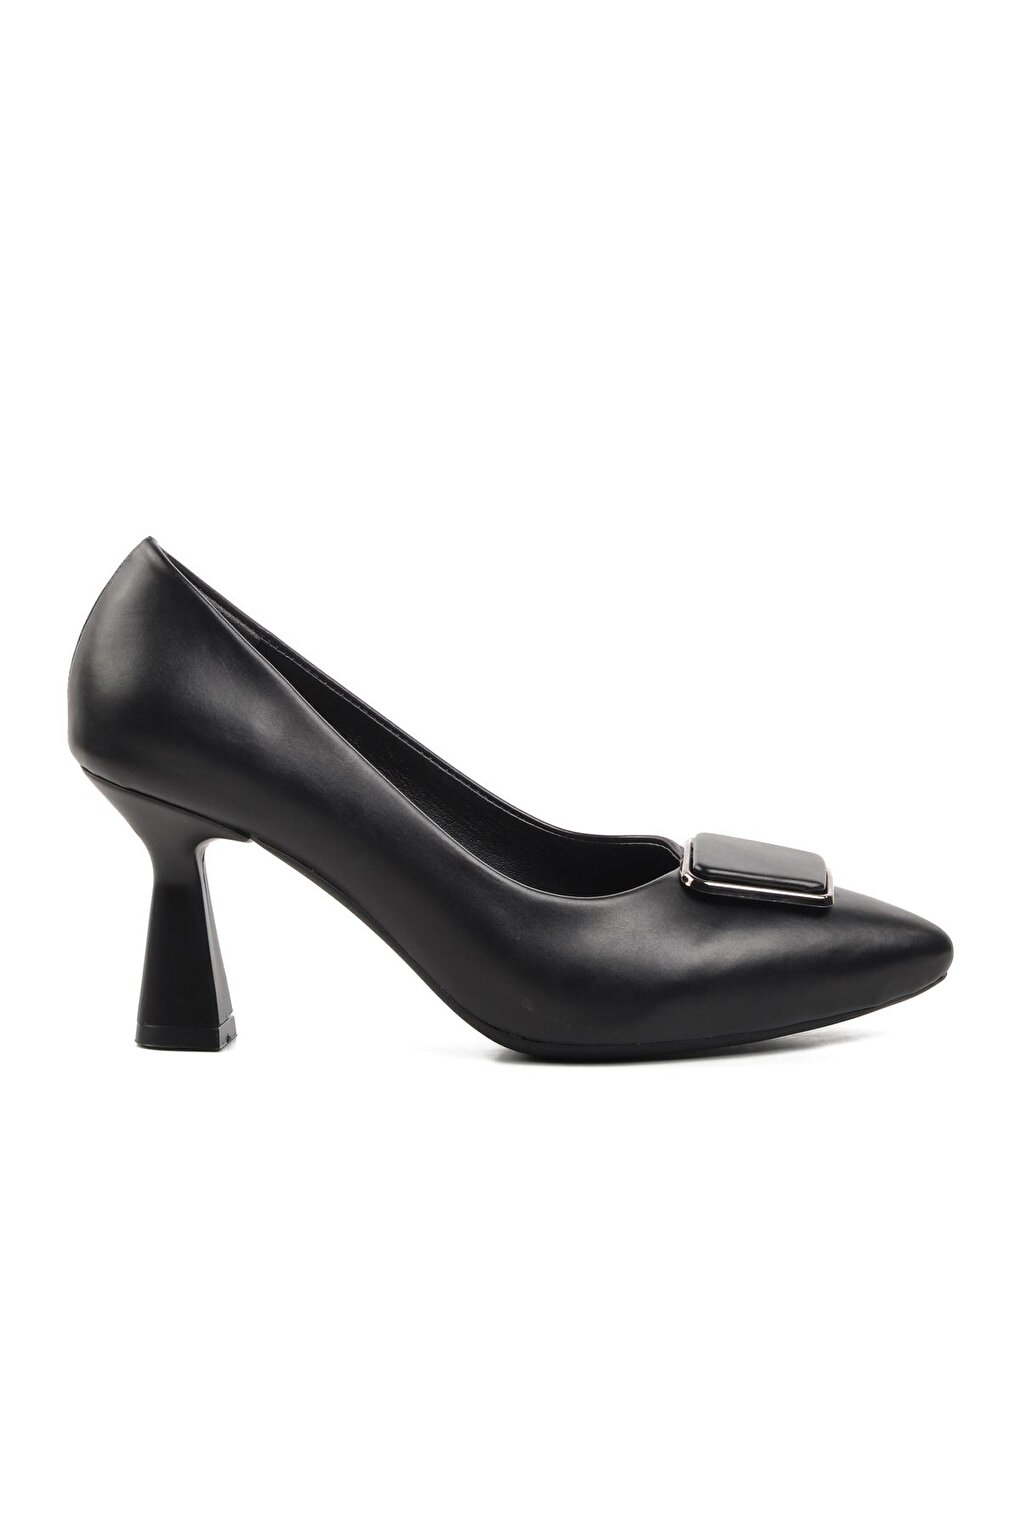 289202 Черные женские туфли на каблуке Ayakmod цена и фото